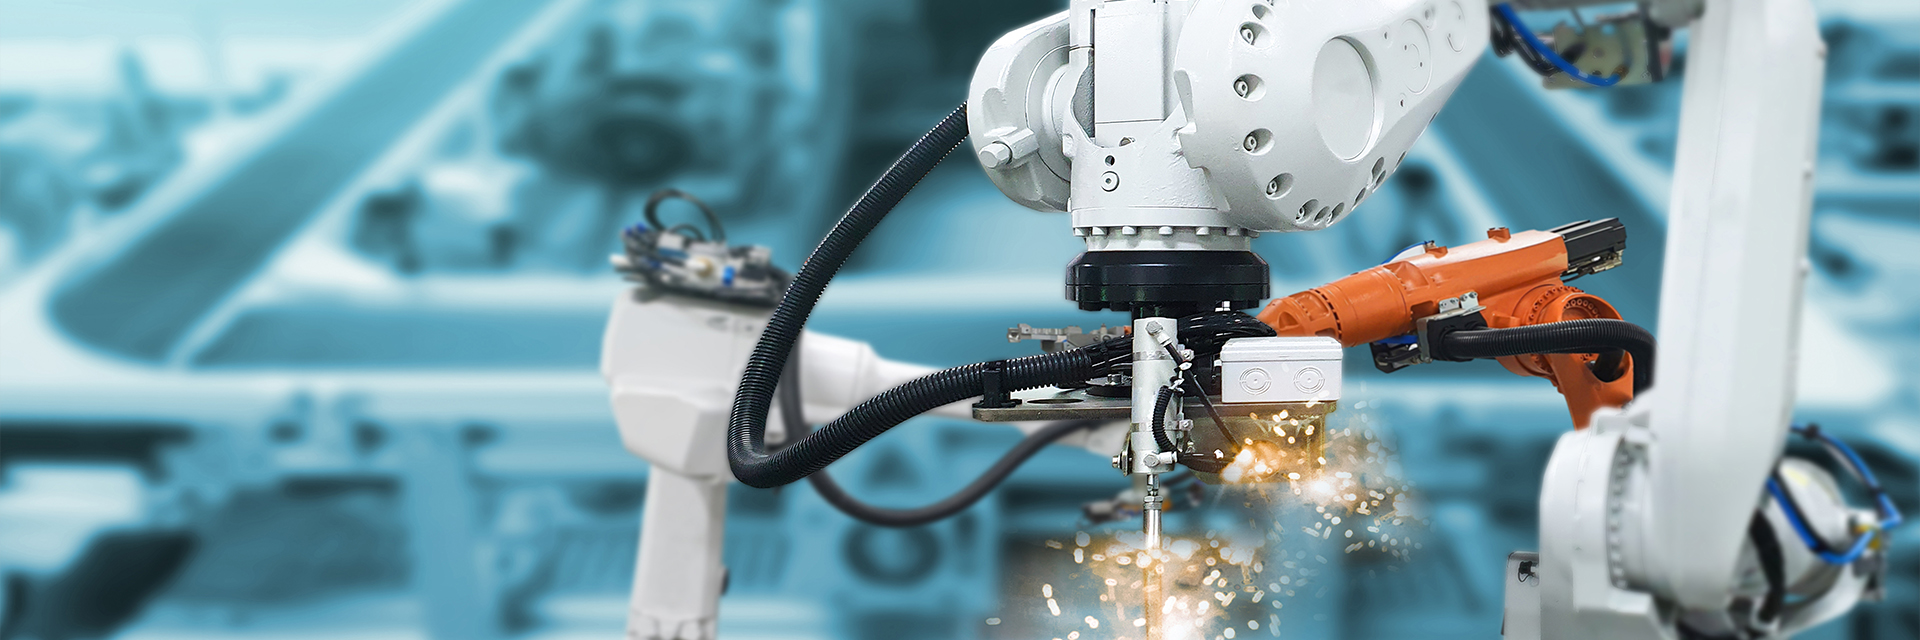 Industrial robot welding